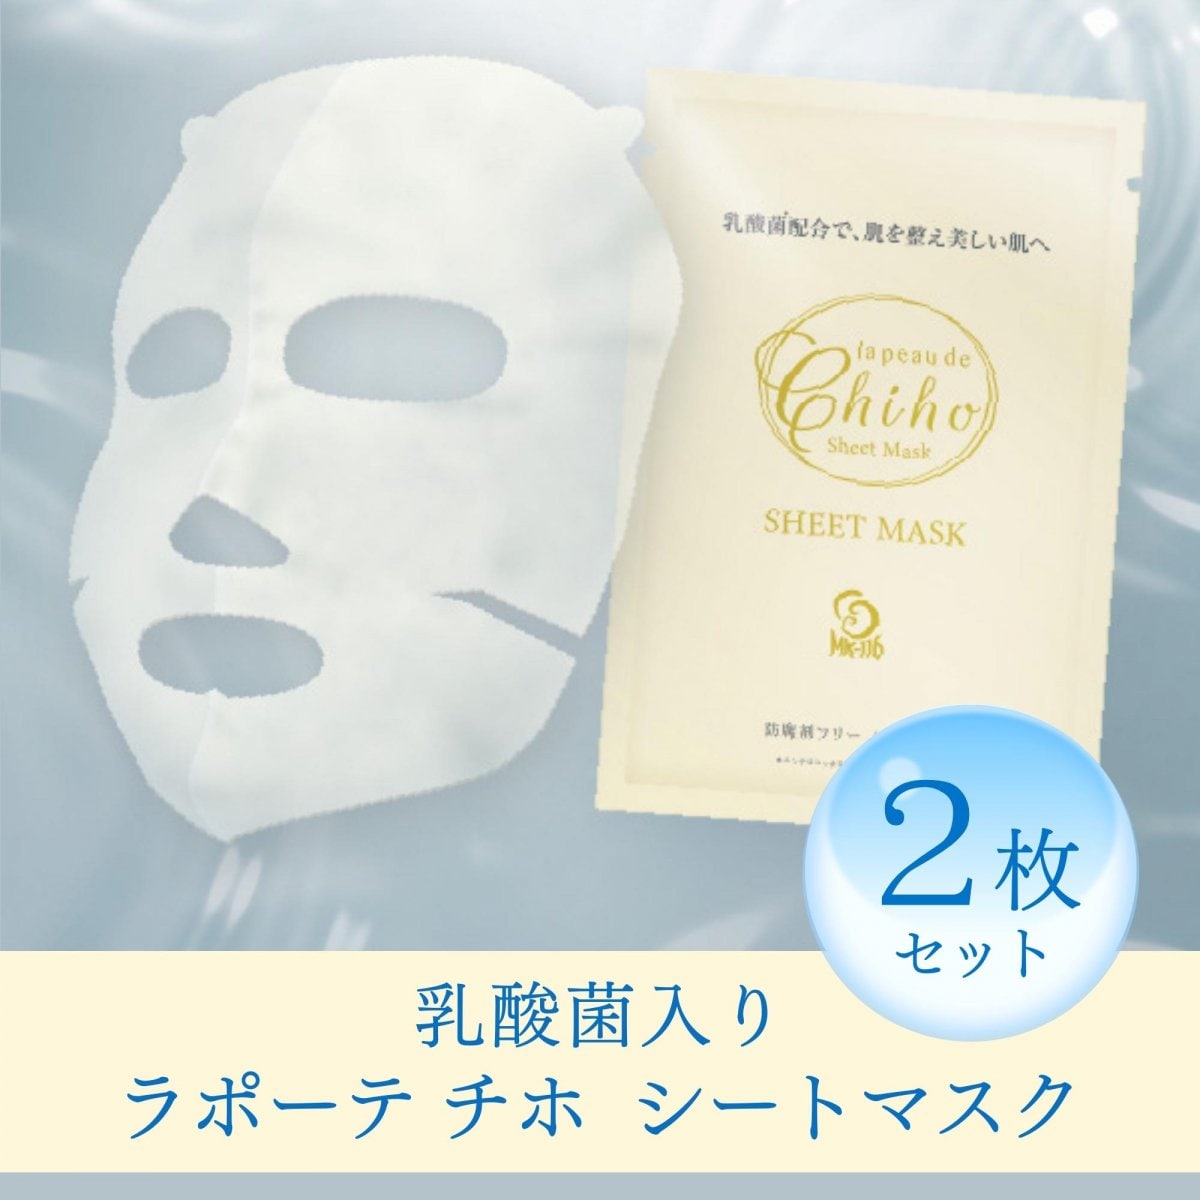 【銀行振込のみ】ラポーテチホ シートマスク2枚セット プリエリセレクト